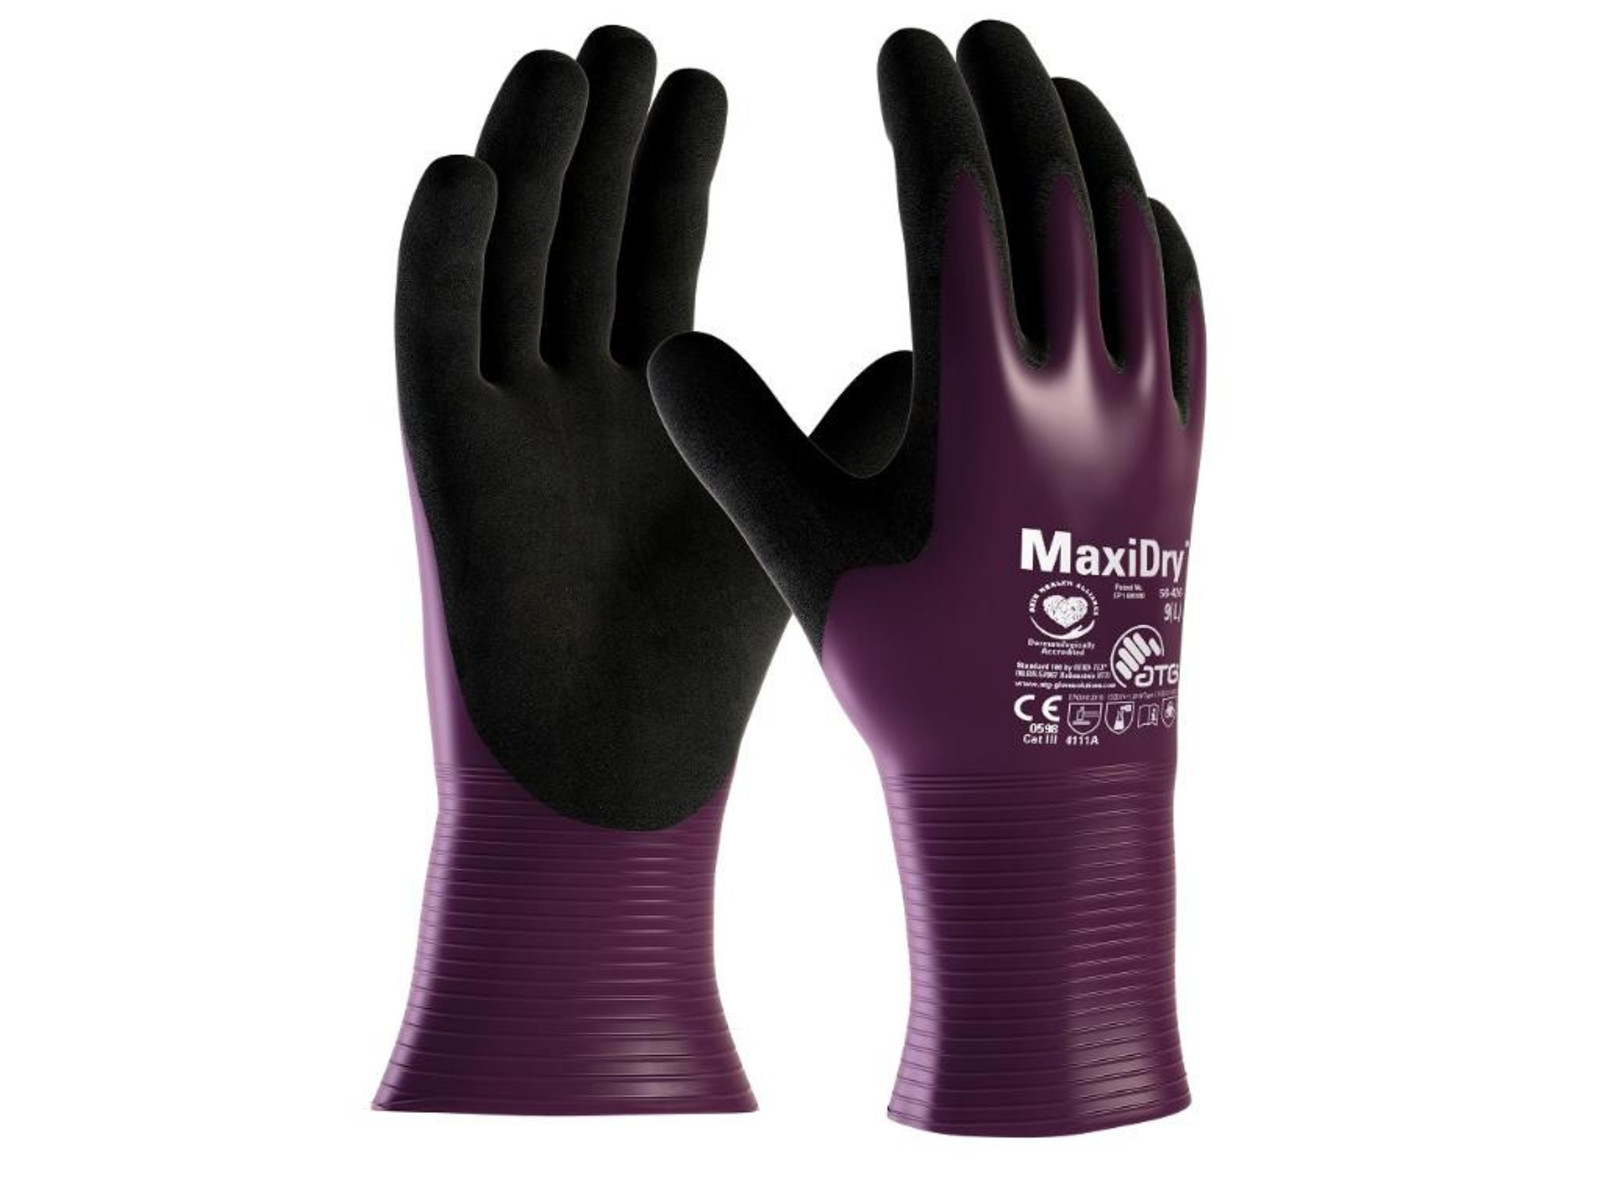 Pracovné rukavice ATG maxi dry 56-426nylon - veľkosť: 8/M, farba: fialová